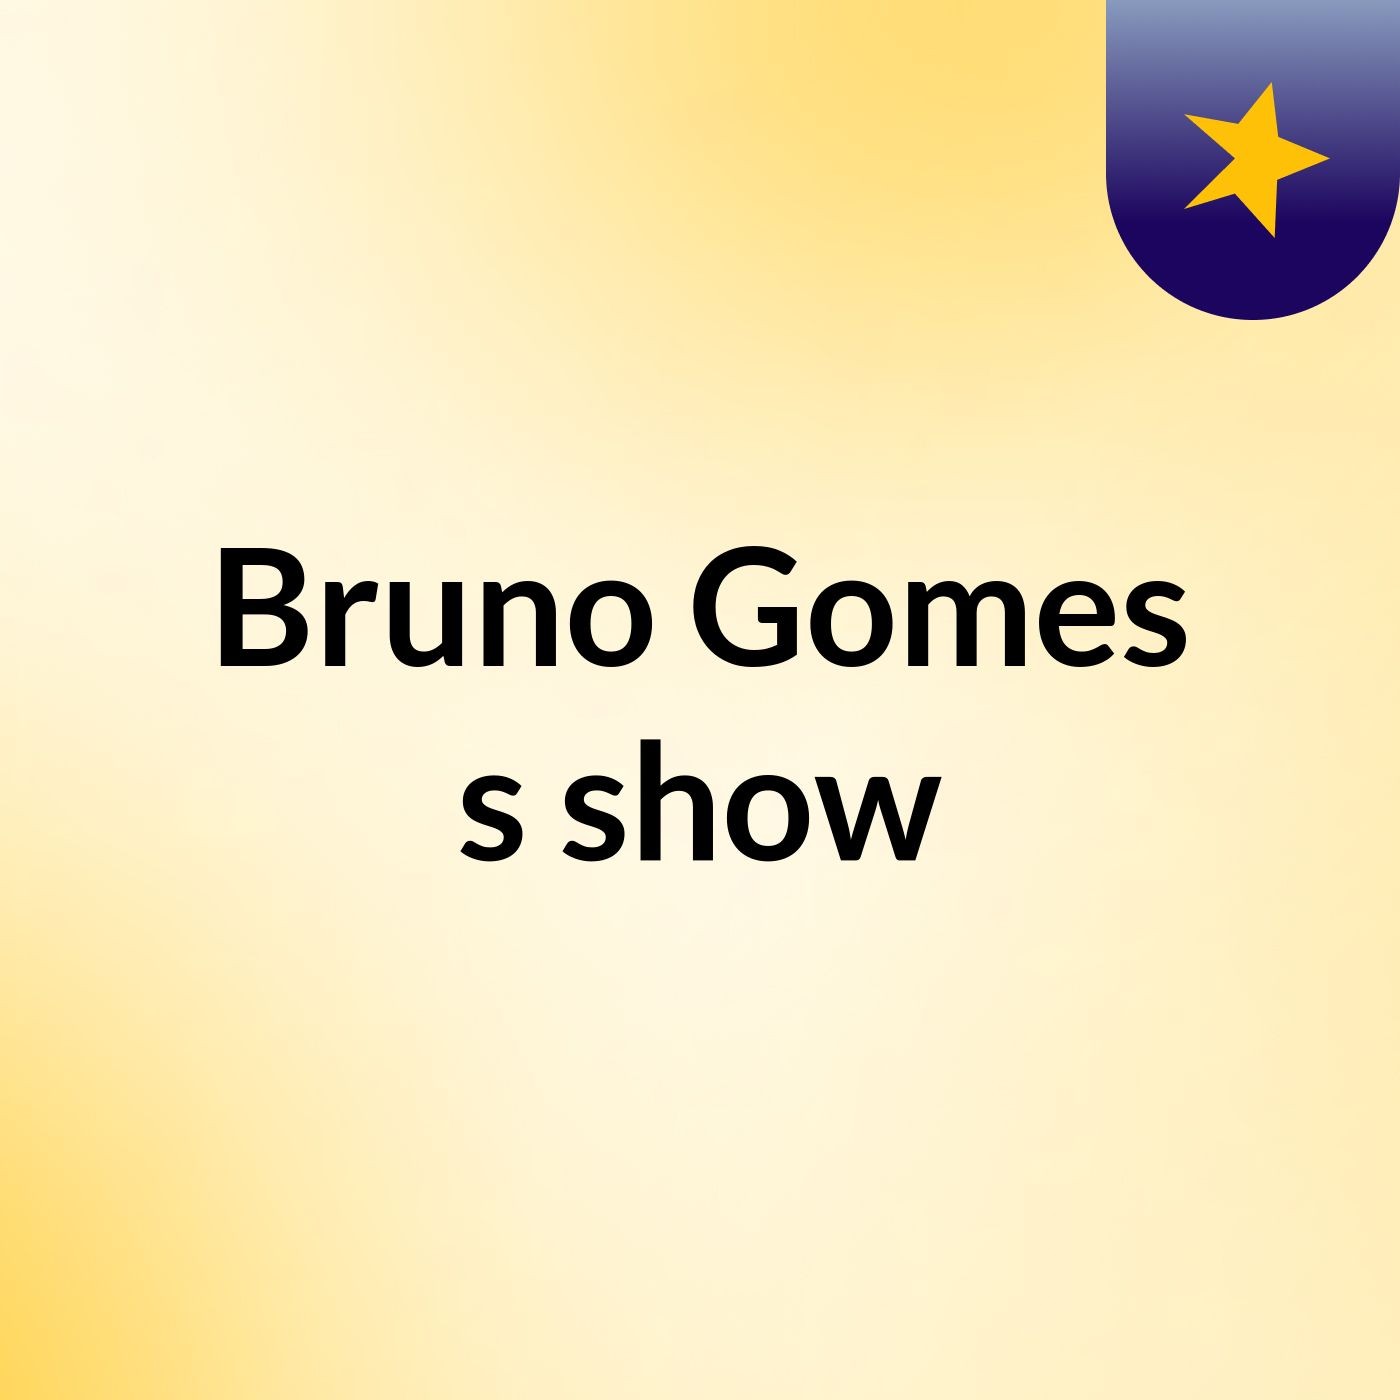 Bruno Gomes's show